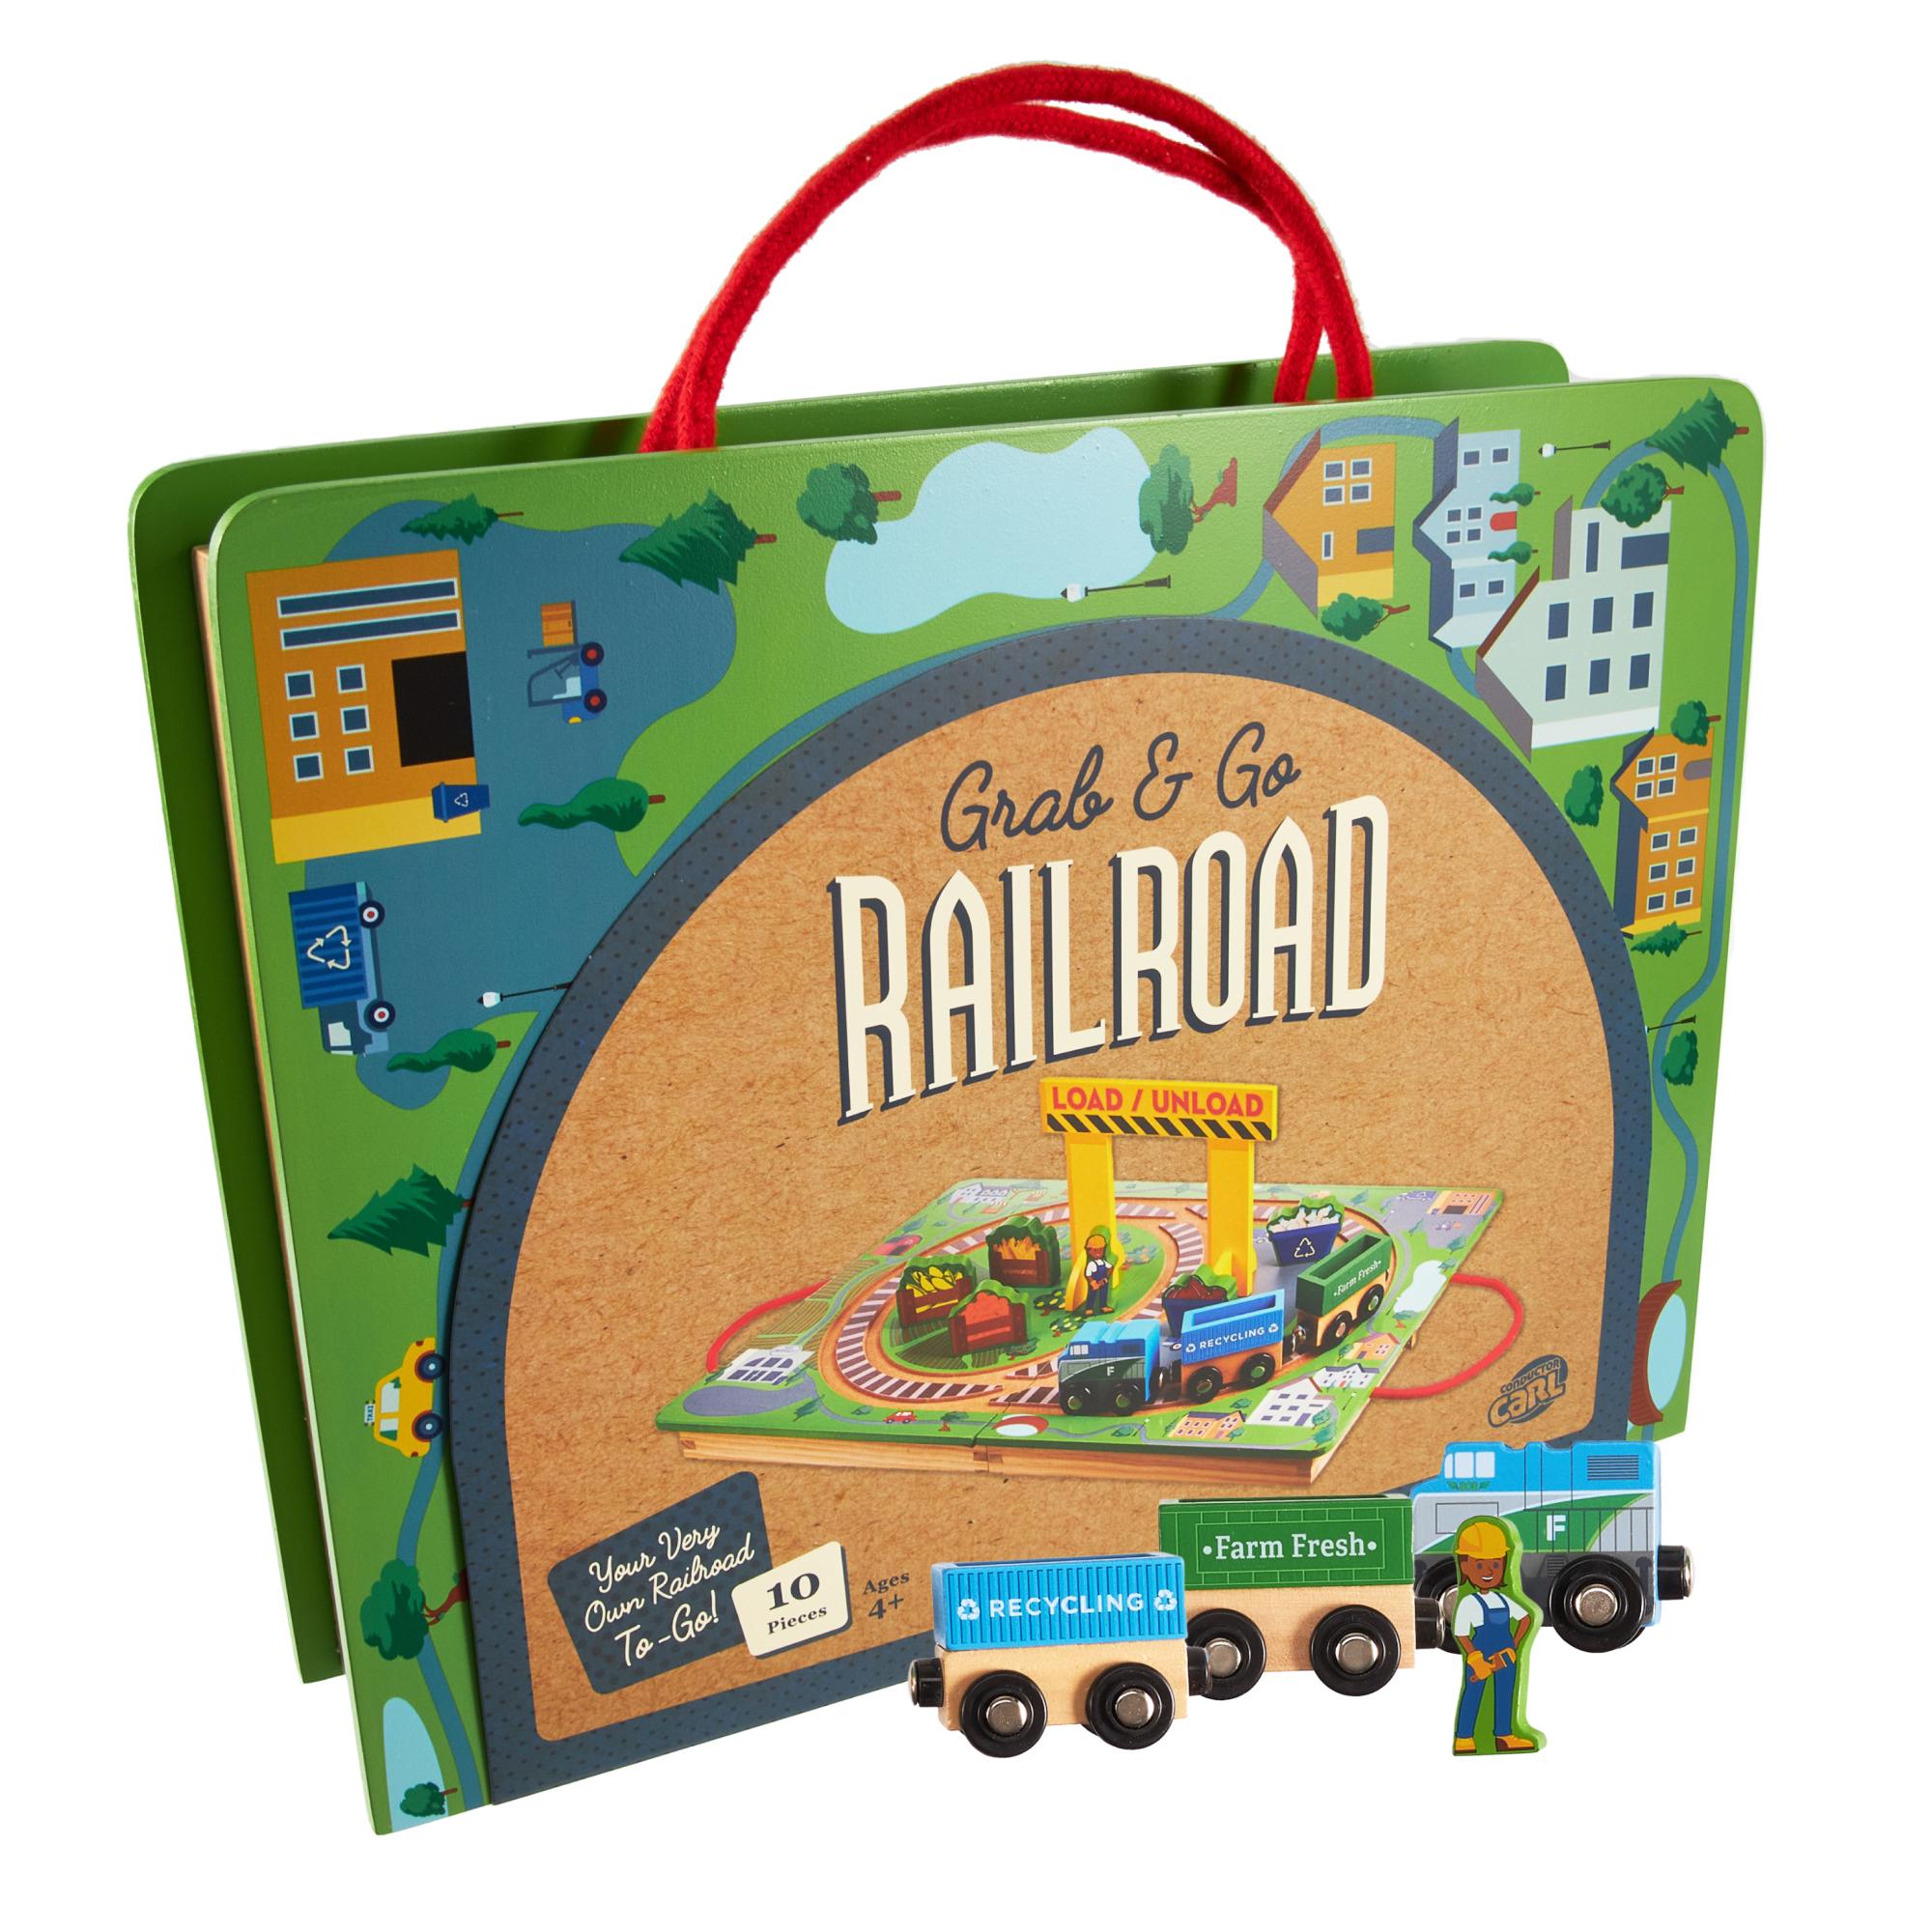 Grab & Go Railroad